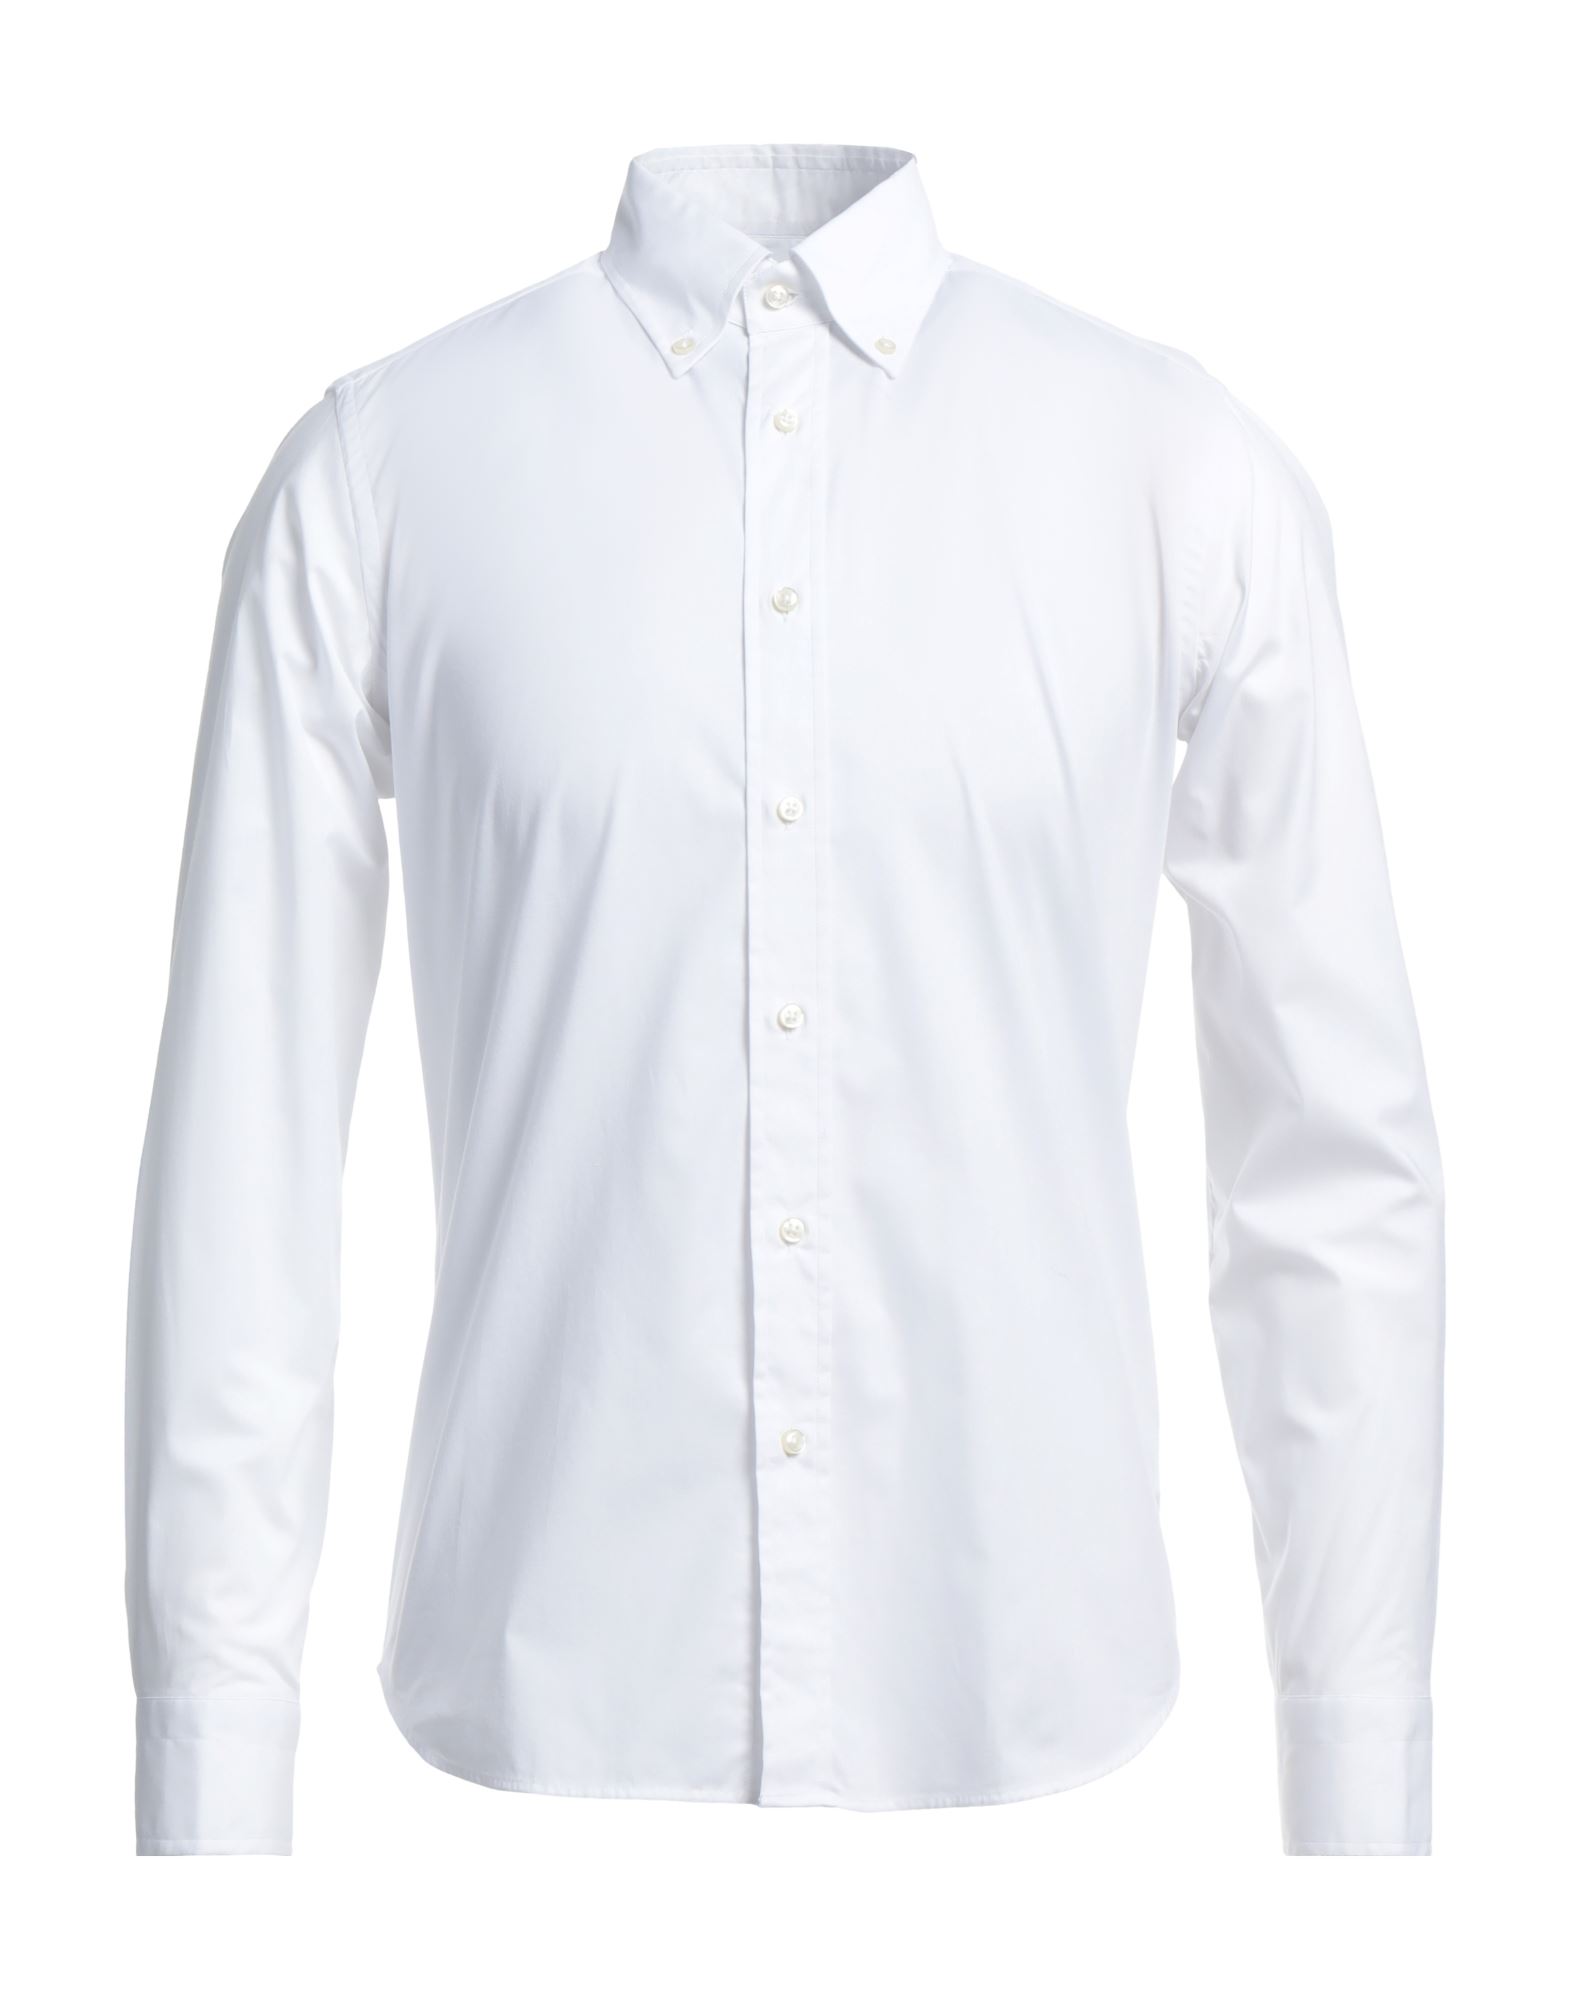 Robert Friedman Shirts In White